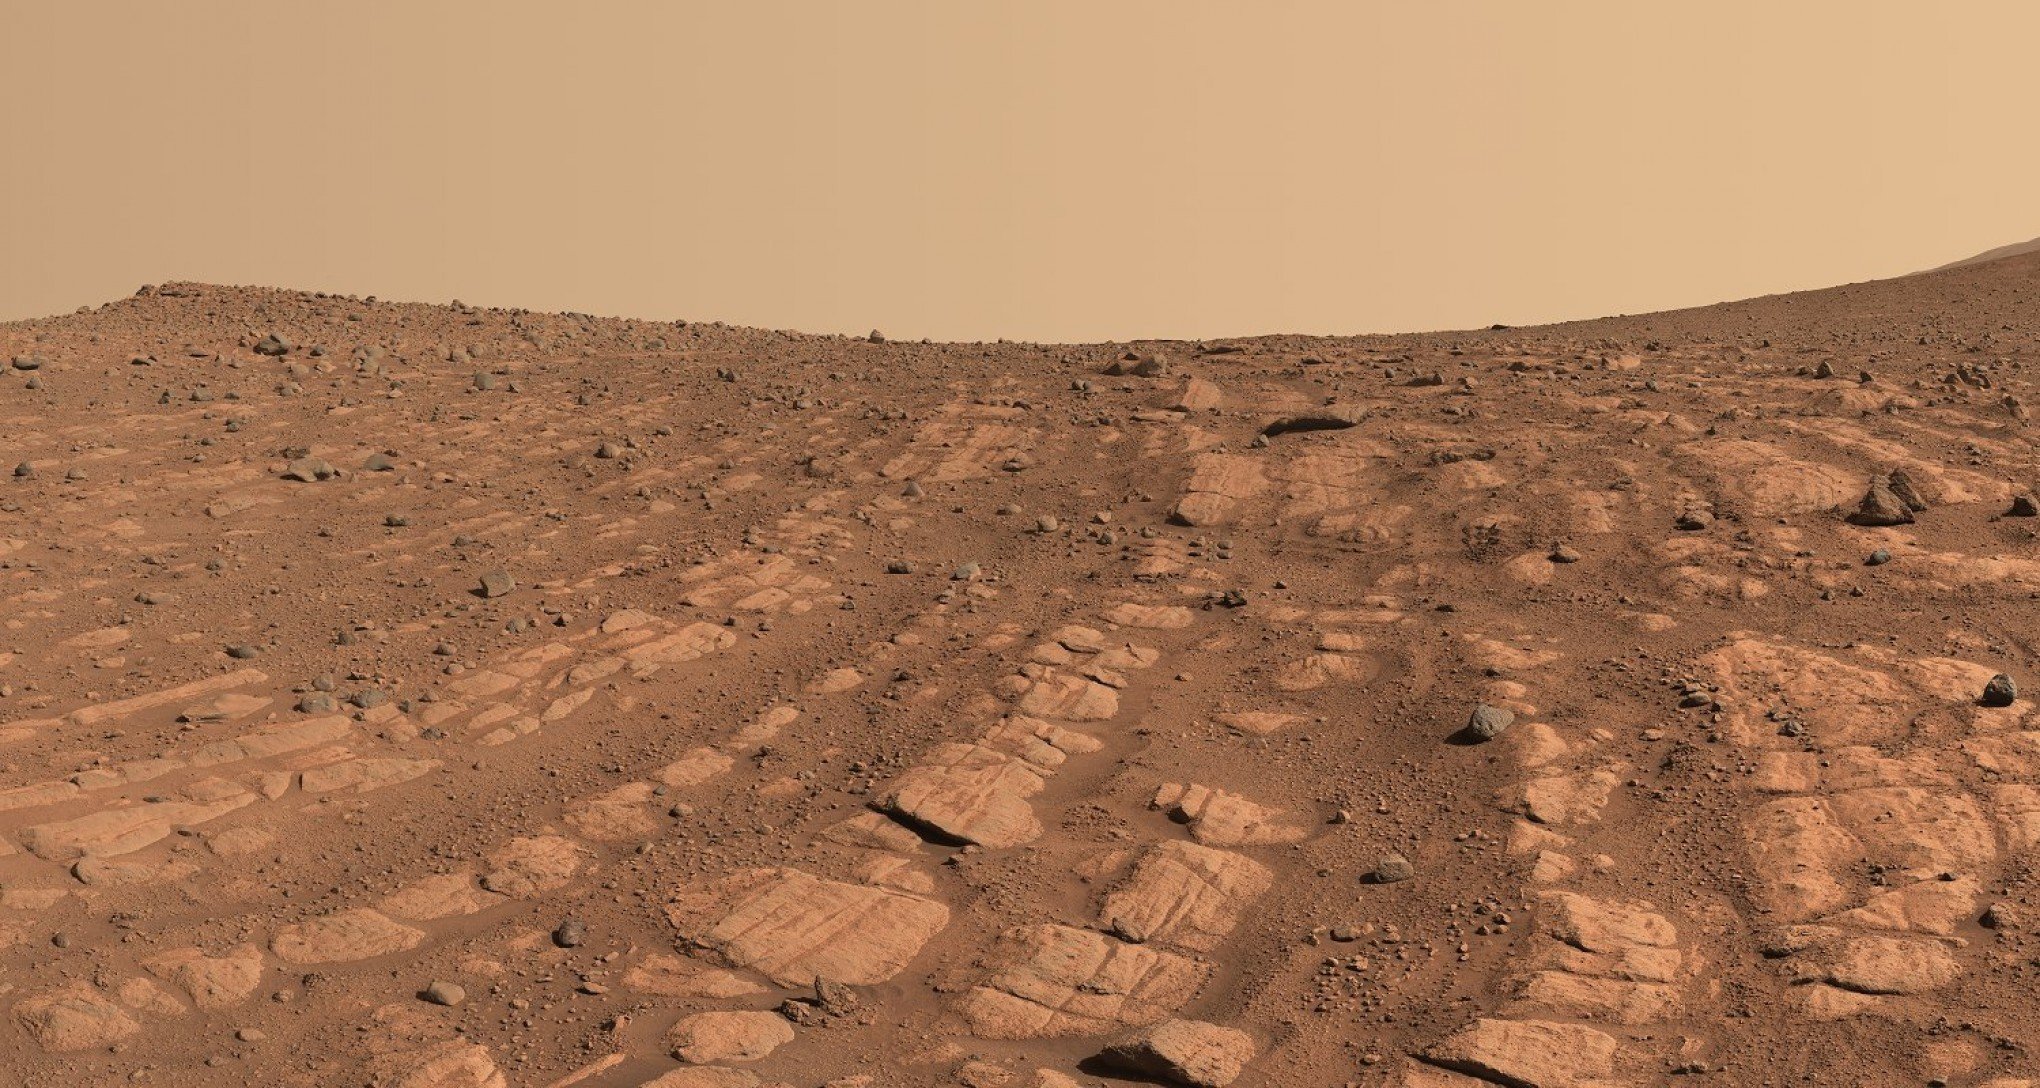 Rio volumoso e agitado em Marte? É o que indicam registros obtidos pela Nasa